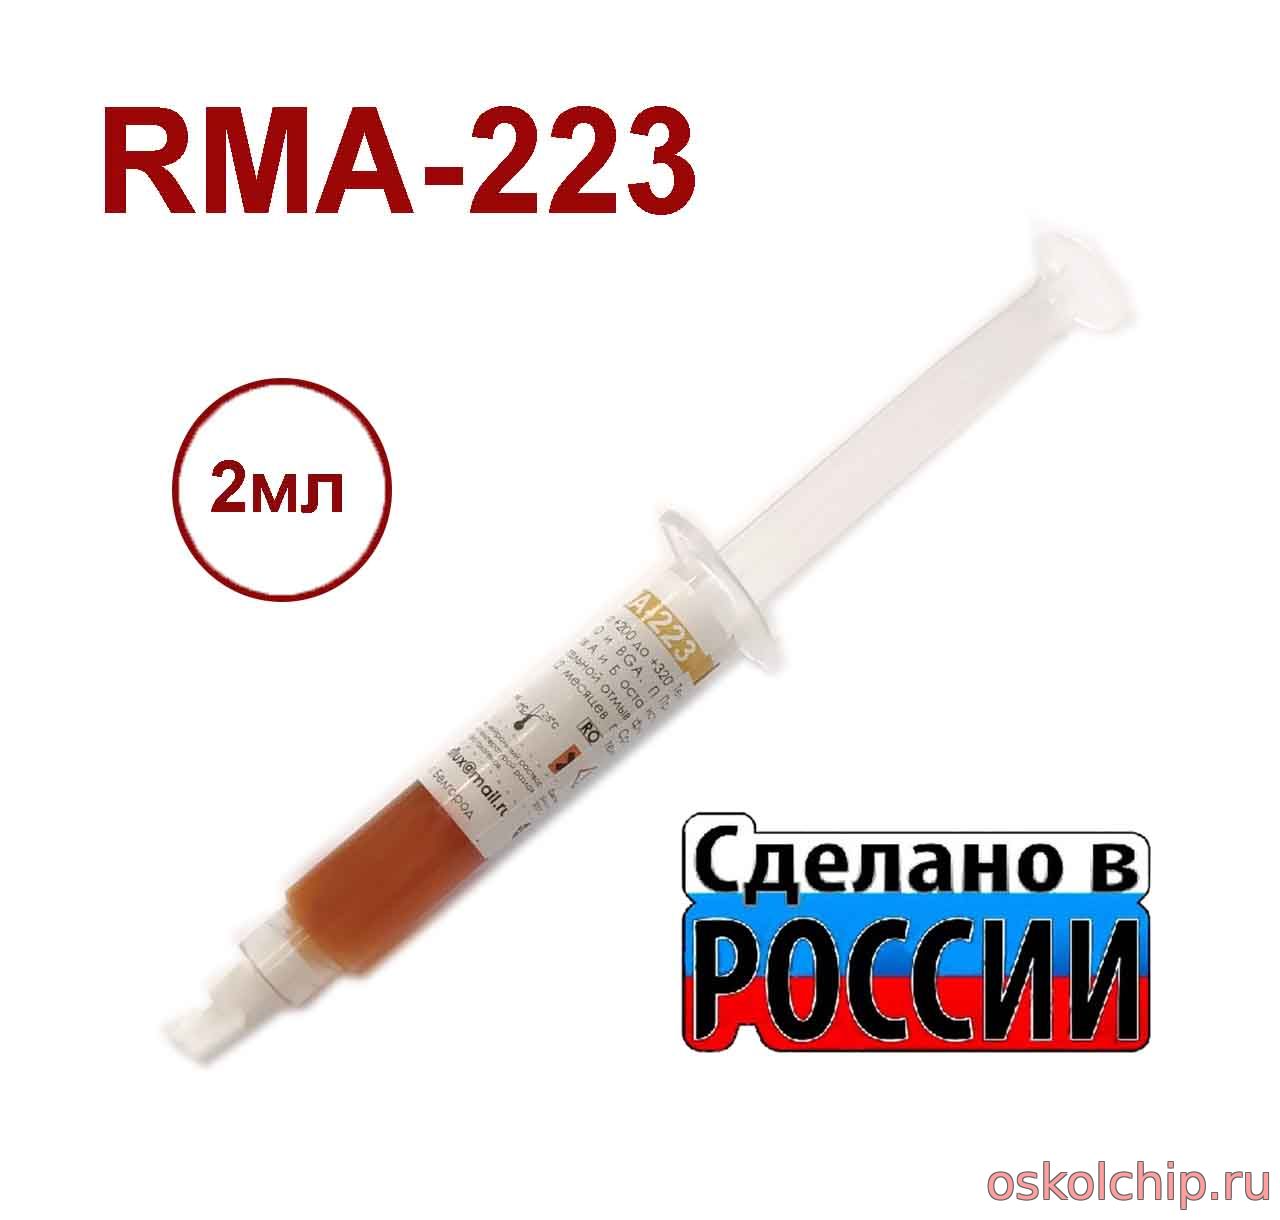 RMA-223 (2мл), Флюс-гель средней активности (R0M1)